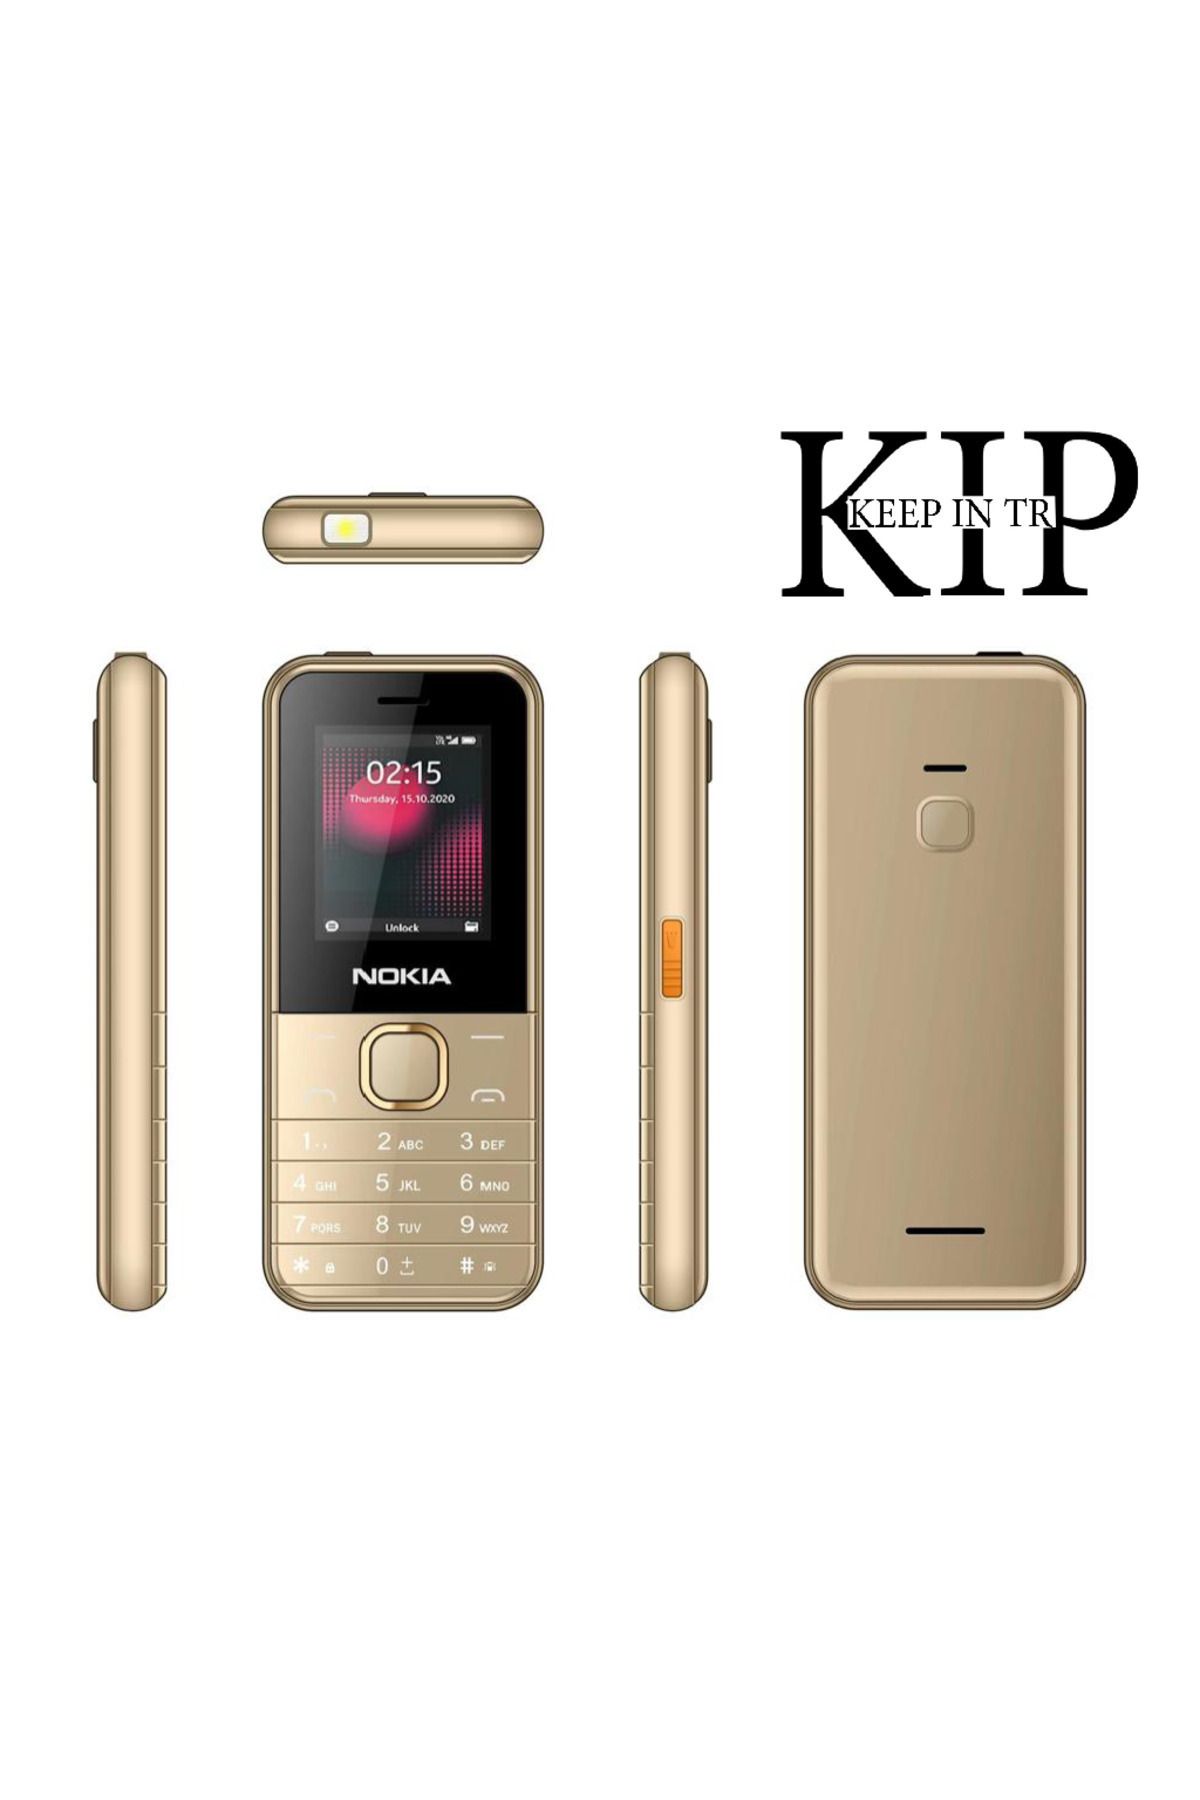 KEEP IN TR Nokiaa Kamerasız Yeni Nesil Asker /yaşlı Tuşlu Telefon